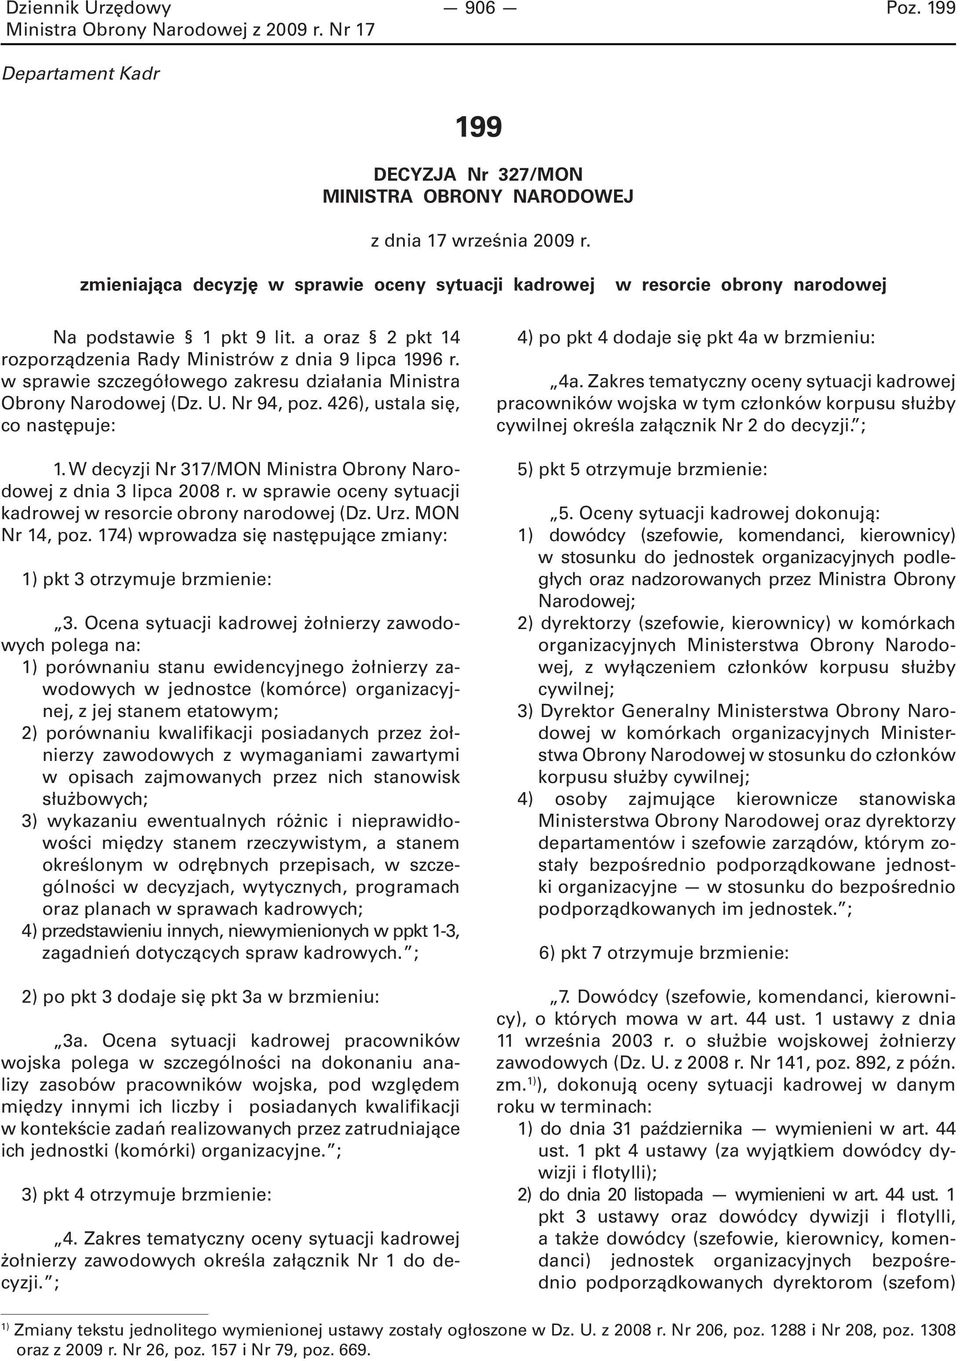 W decyzji Nr 317/MON Ministra Obrony Narodowej z dnia 3 lipca 2008 r. w sprawie oceny sytuacji kadrowej w resorcie obrony narodowej (Dz. Urz. MON Nr 14, poz.